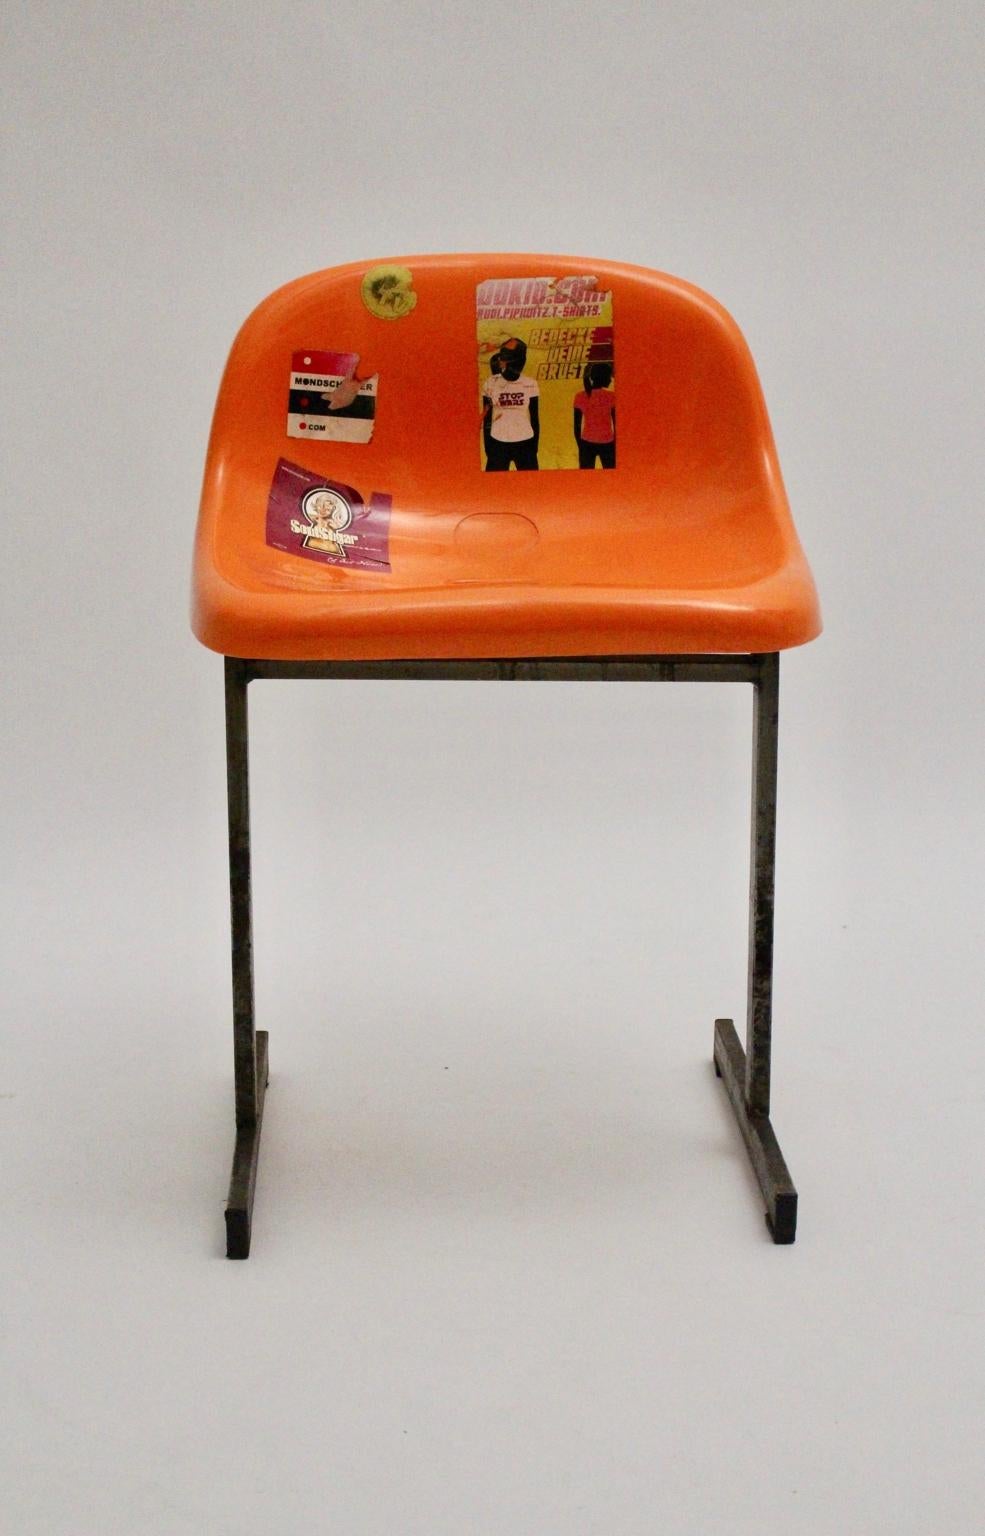 Chaise Pop Art of Vintage en métal plastique provenant d'un stade de sport à Steele. L'armature est en acier et l'assise en plastique orange. La coque du siège est recouverte de nombreux autocollants.
Stable et robuste, la surface de la chaise